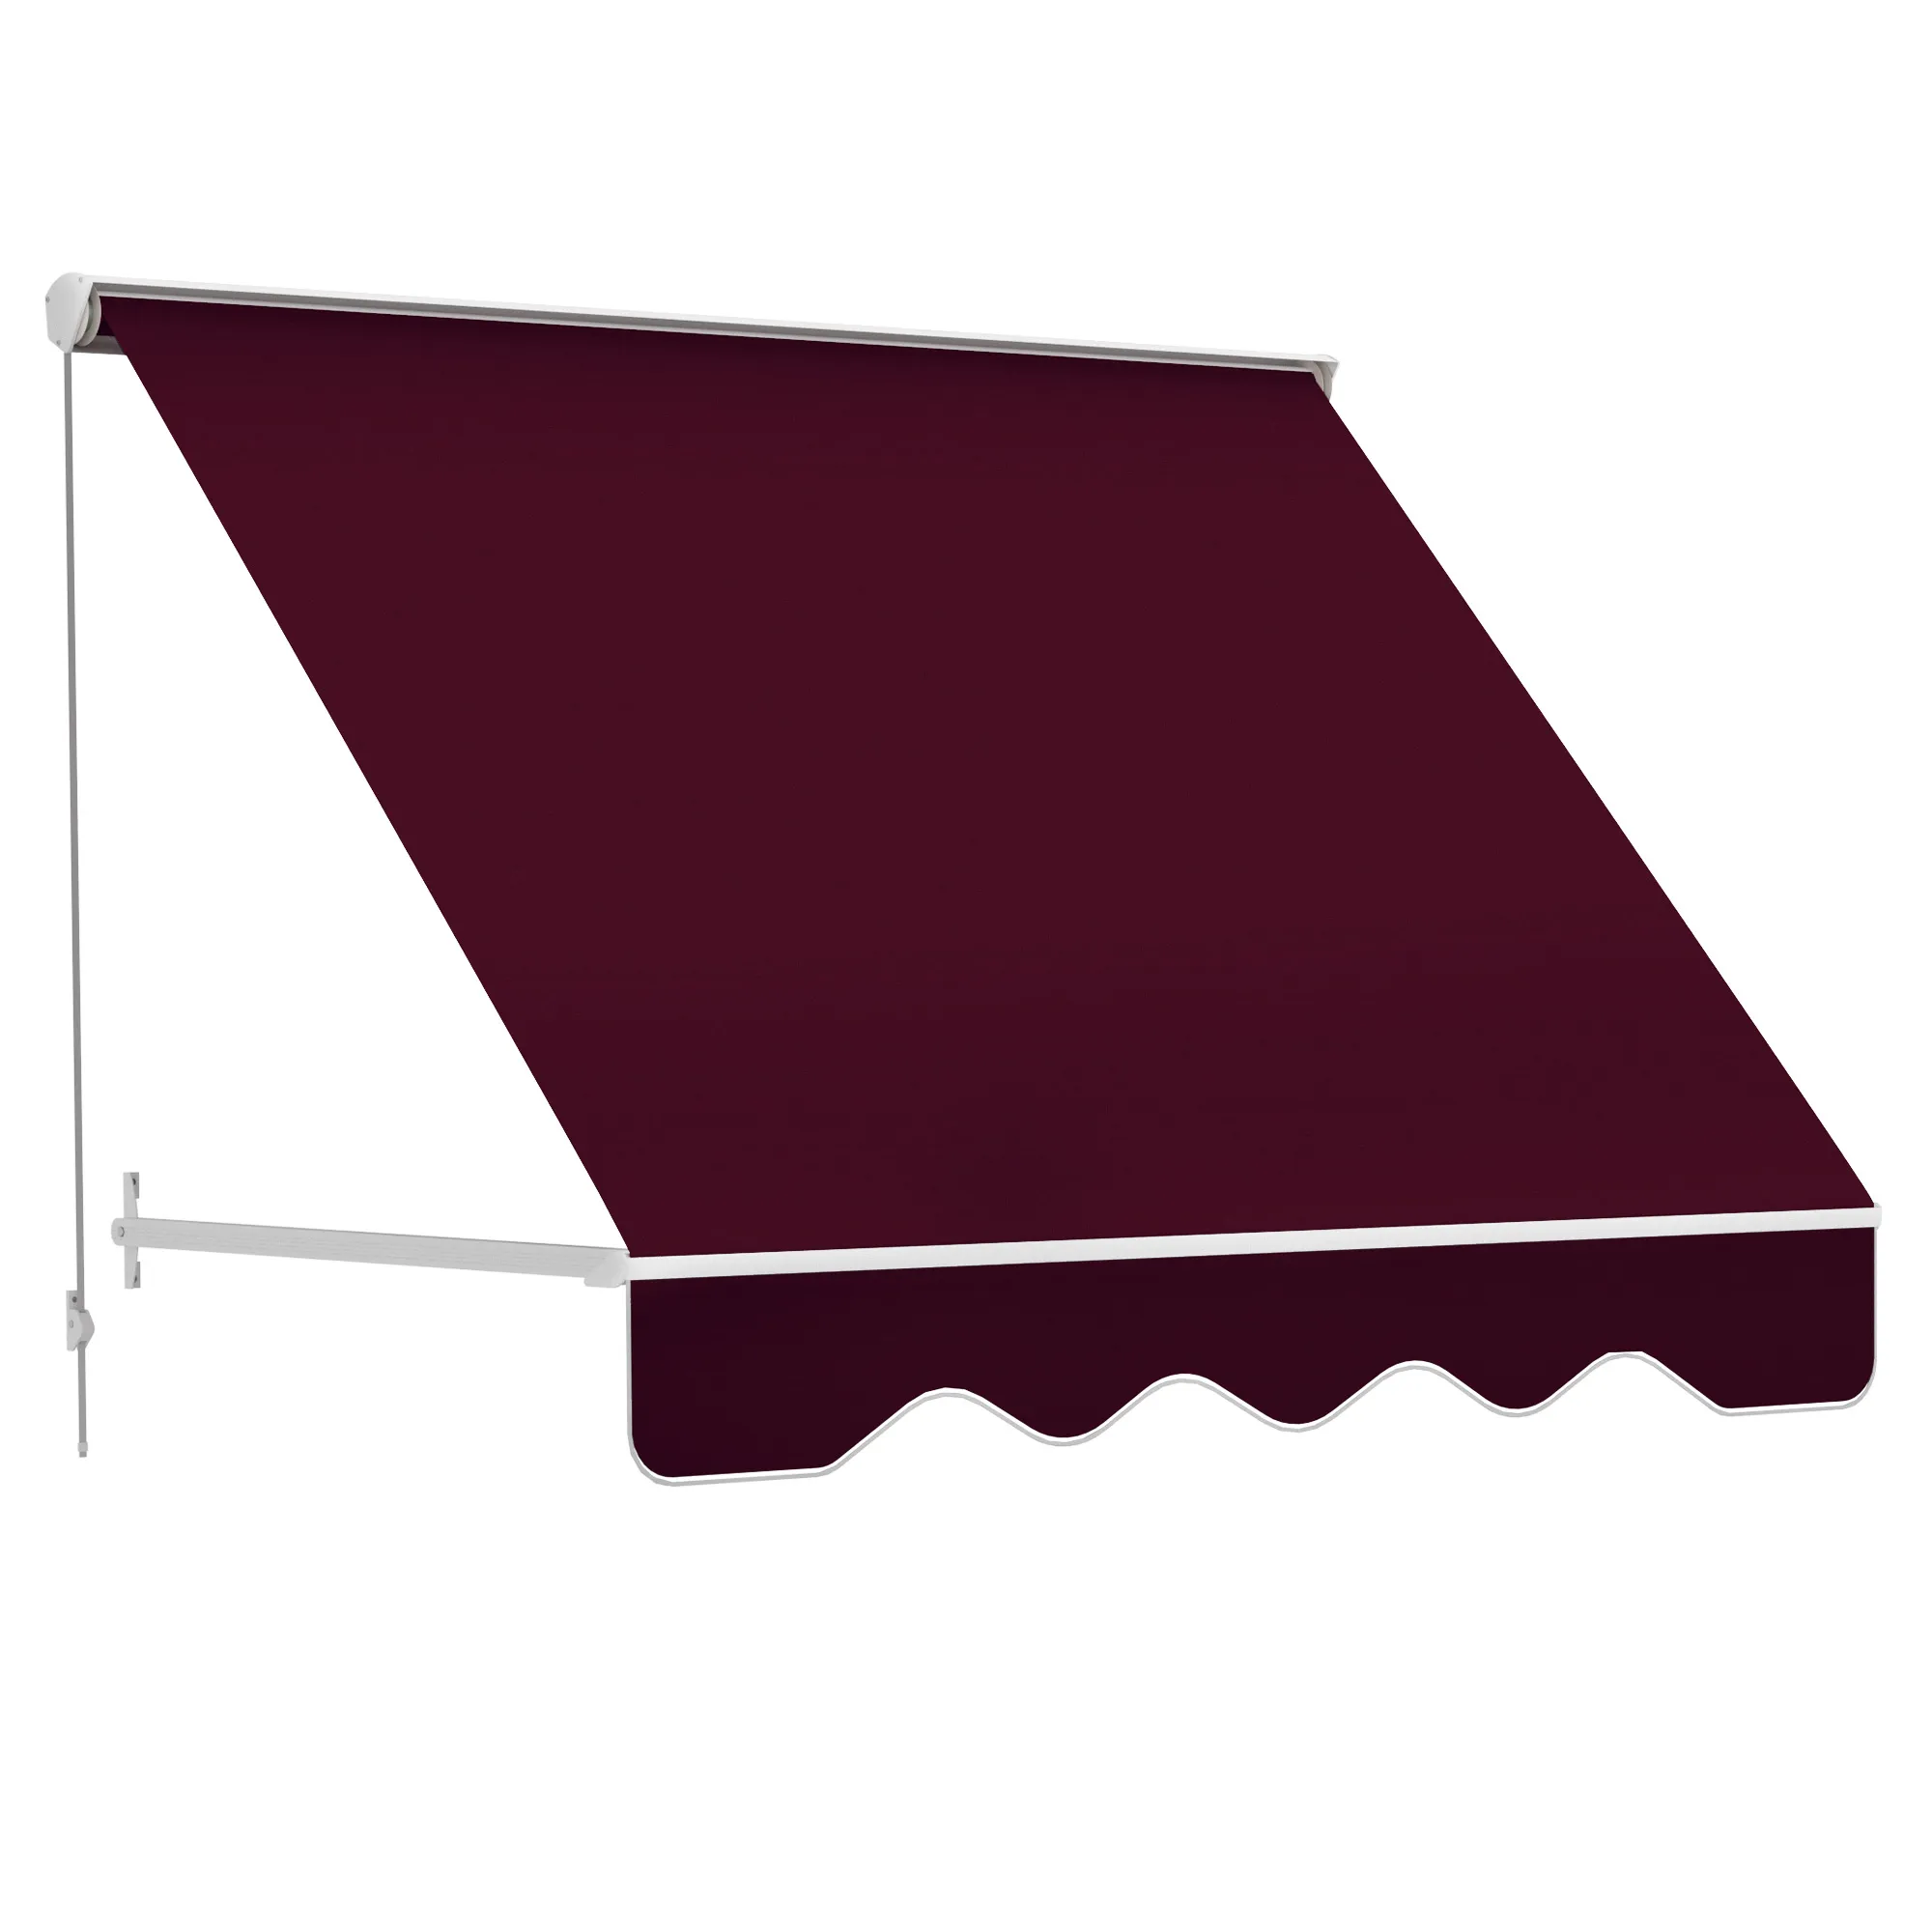  Tenda da Sole a Caduta con Rullo Avvolgibile e Angolazione Regolabile 0-120°, 180×70cm, Rosso